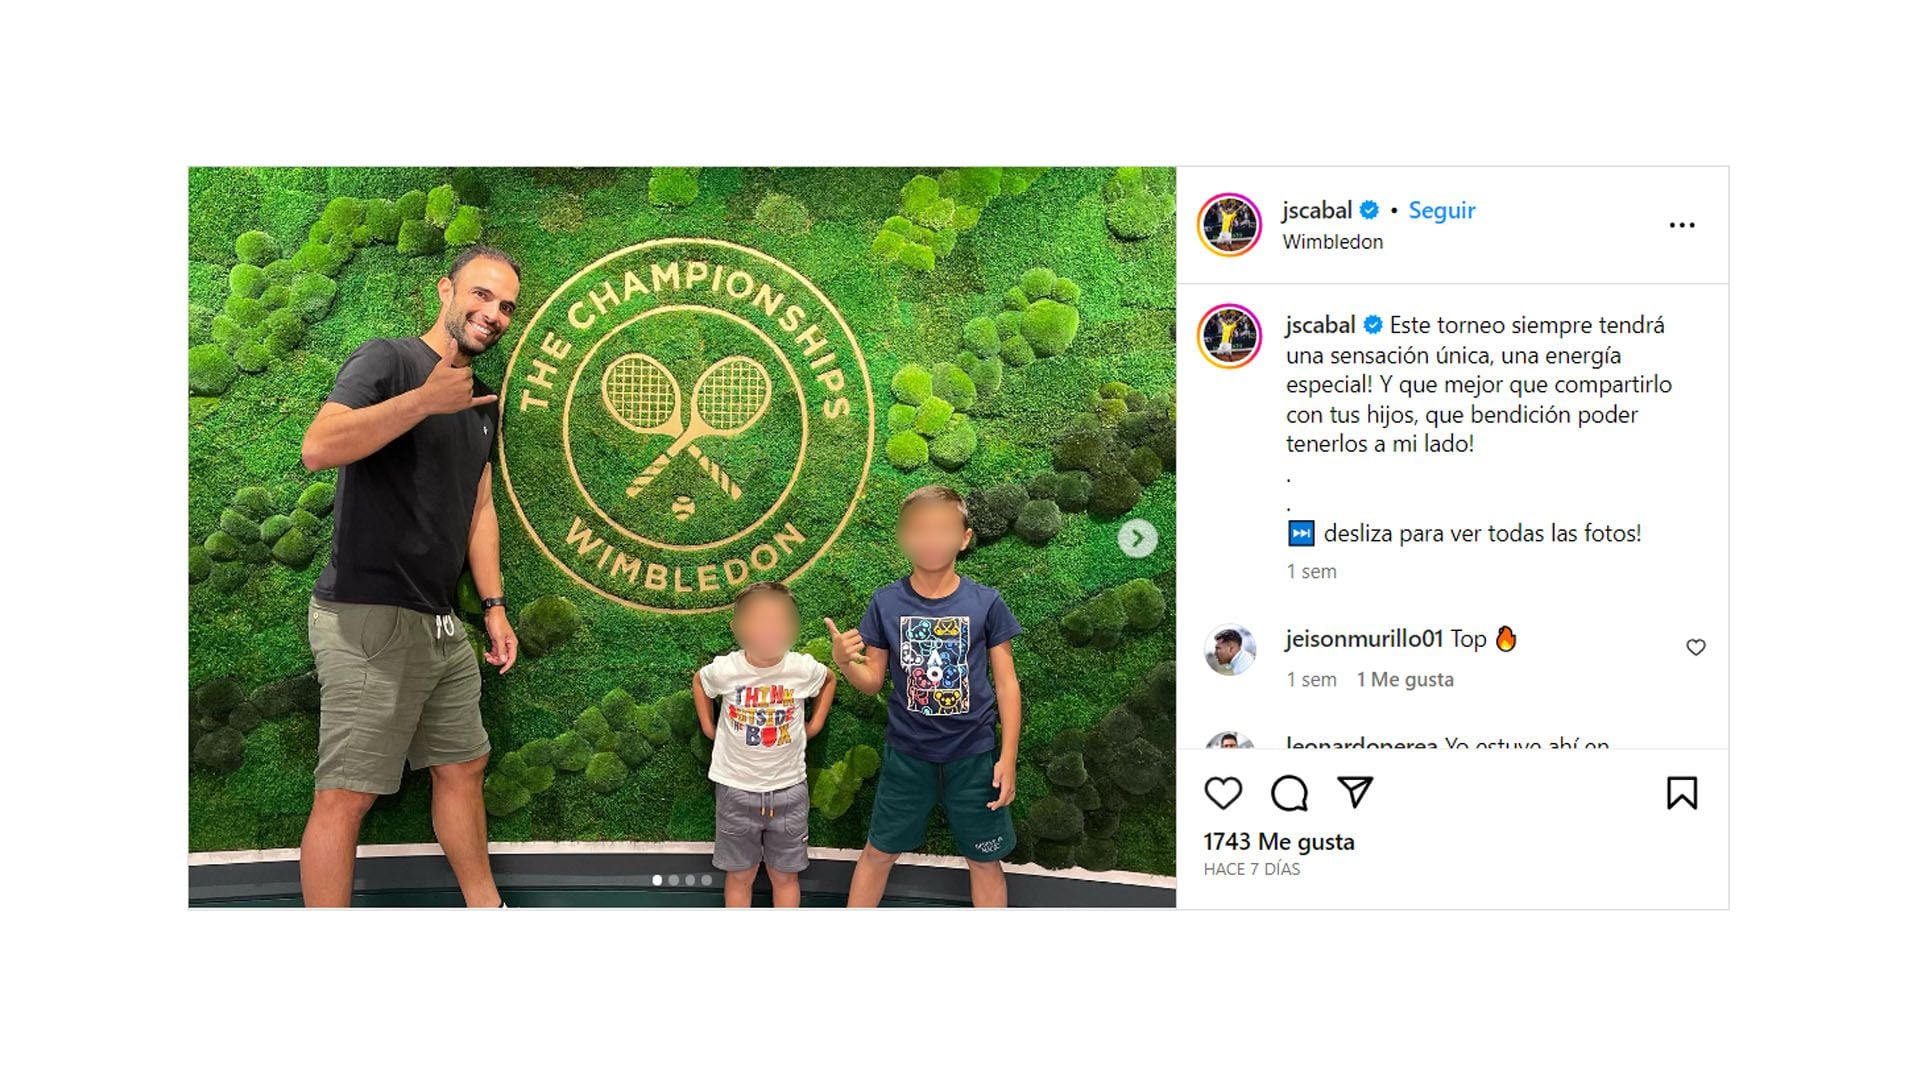 El posteo de Cabal en Wimbledon